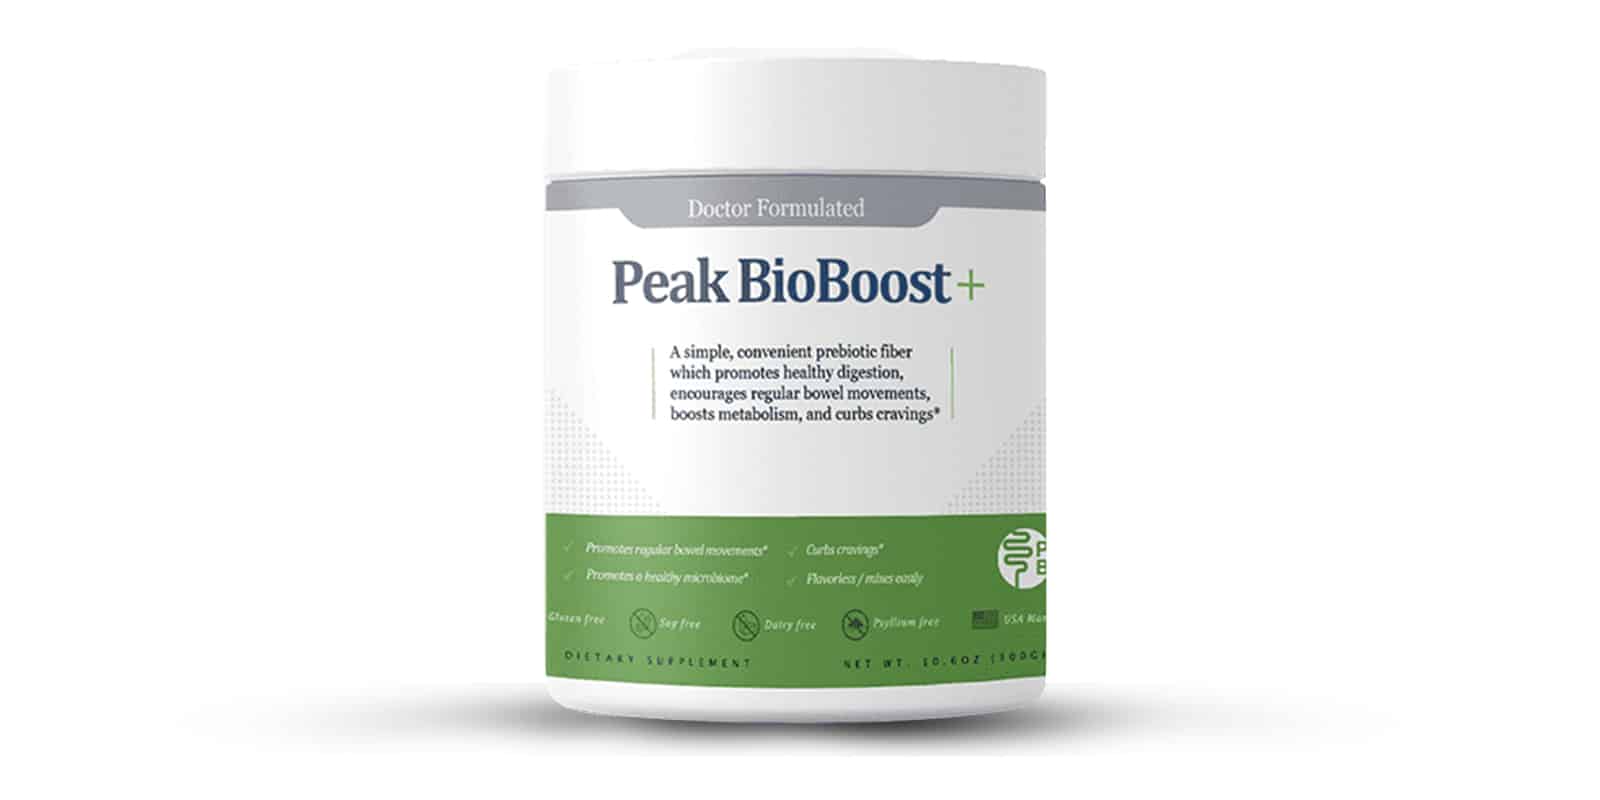 Peak Bio Boost review